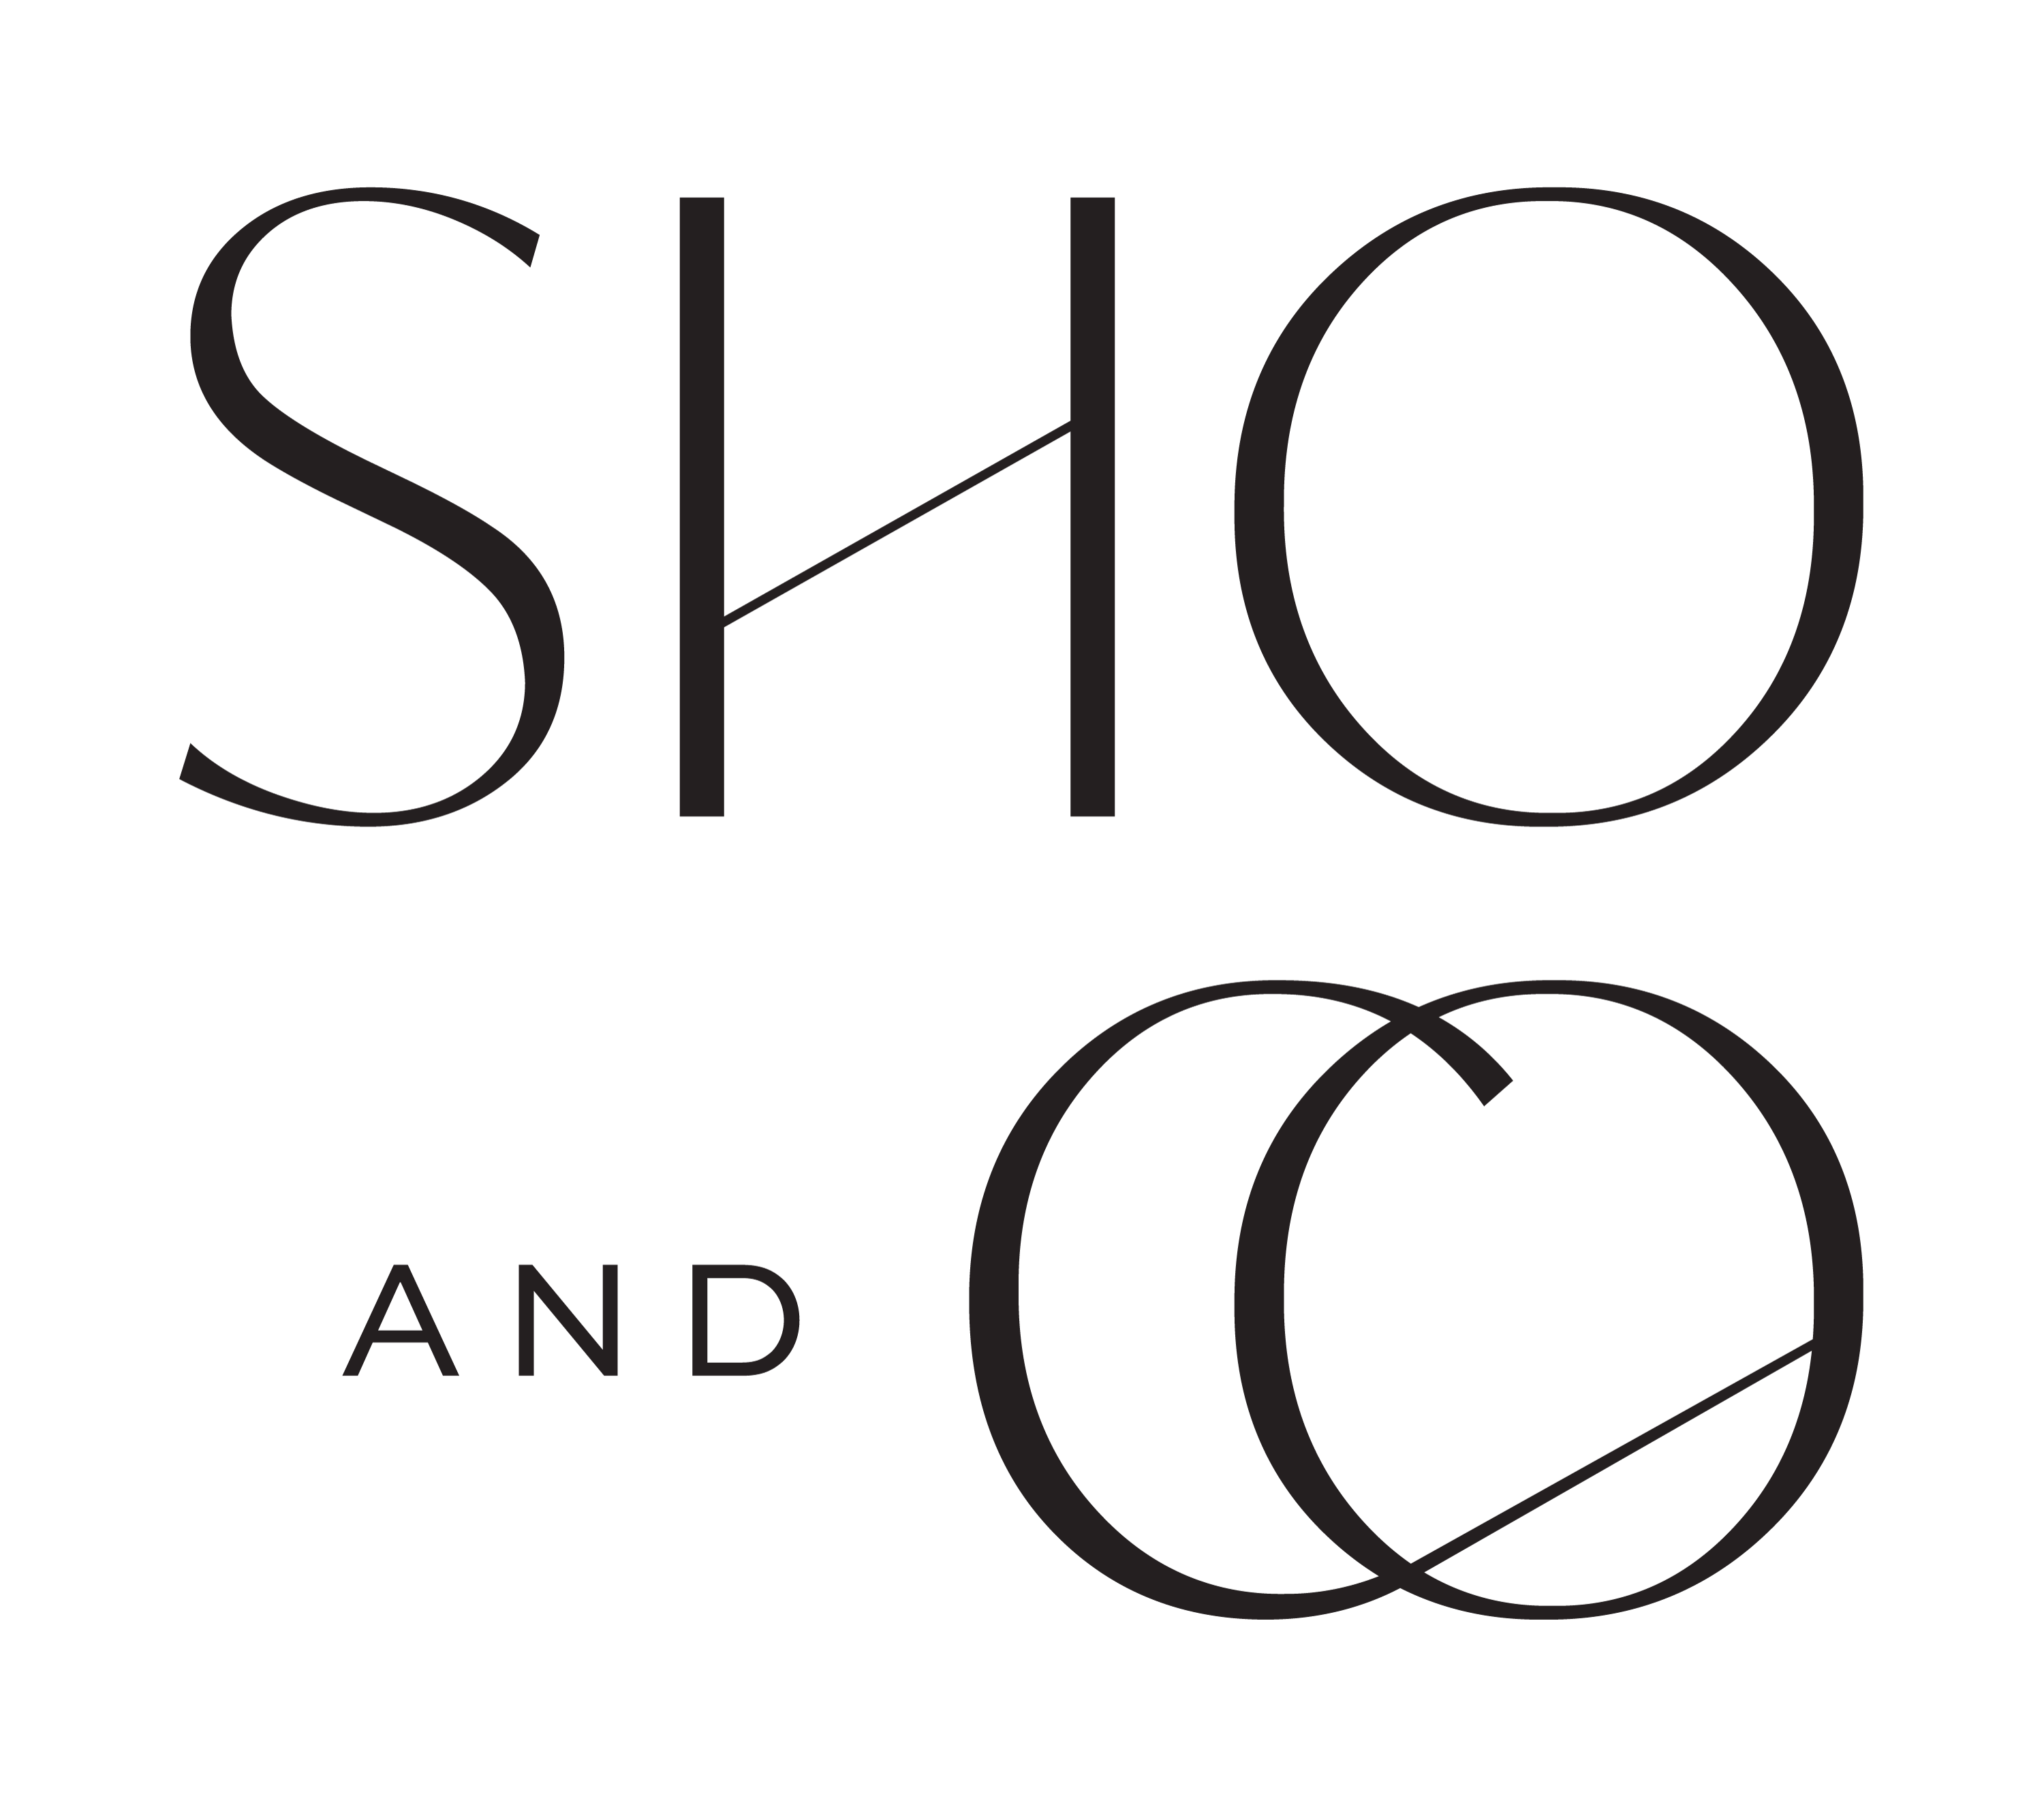 Sho & Co Interior Design review